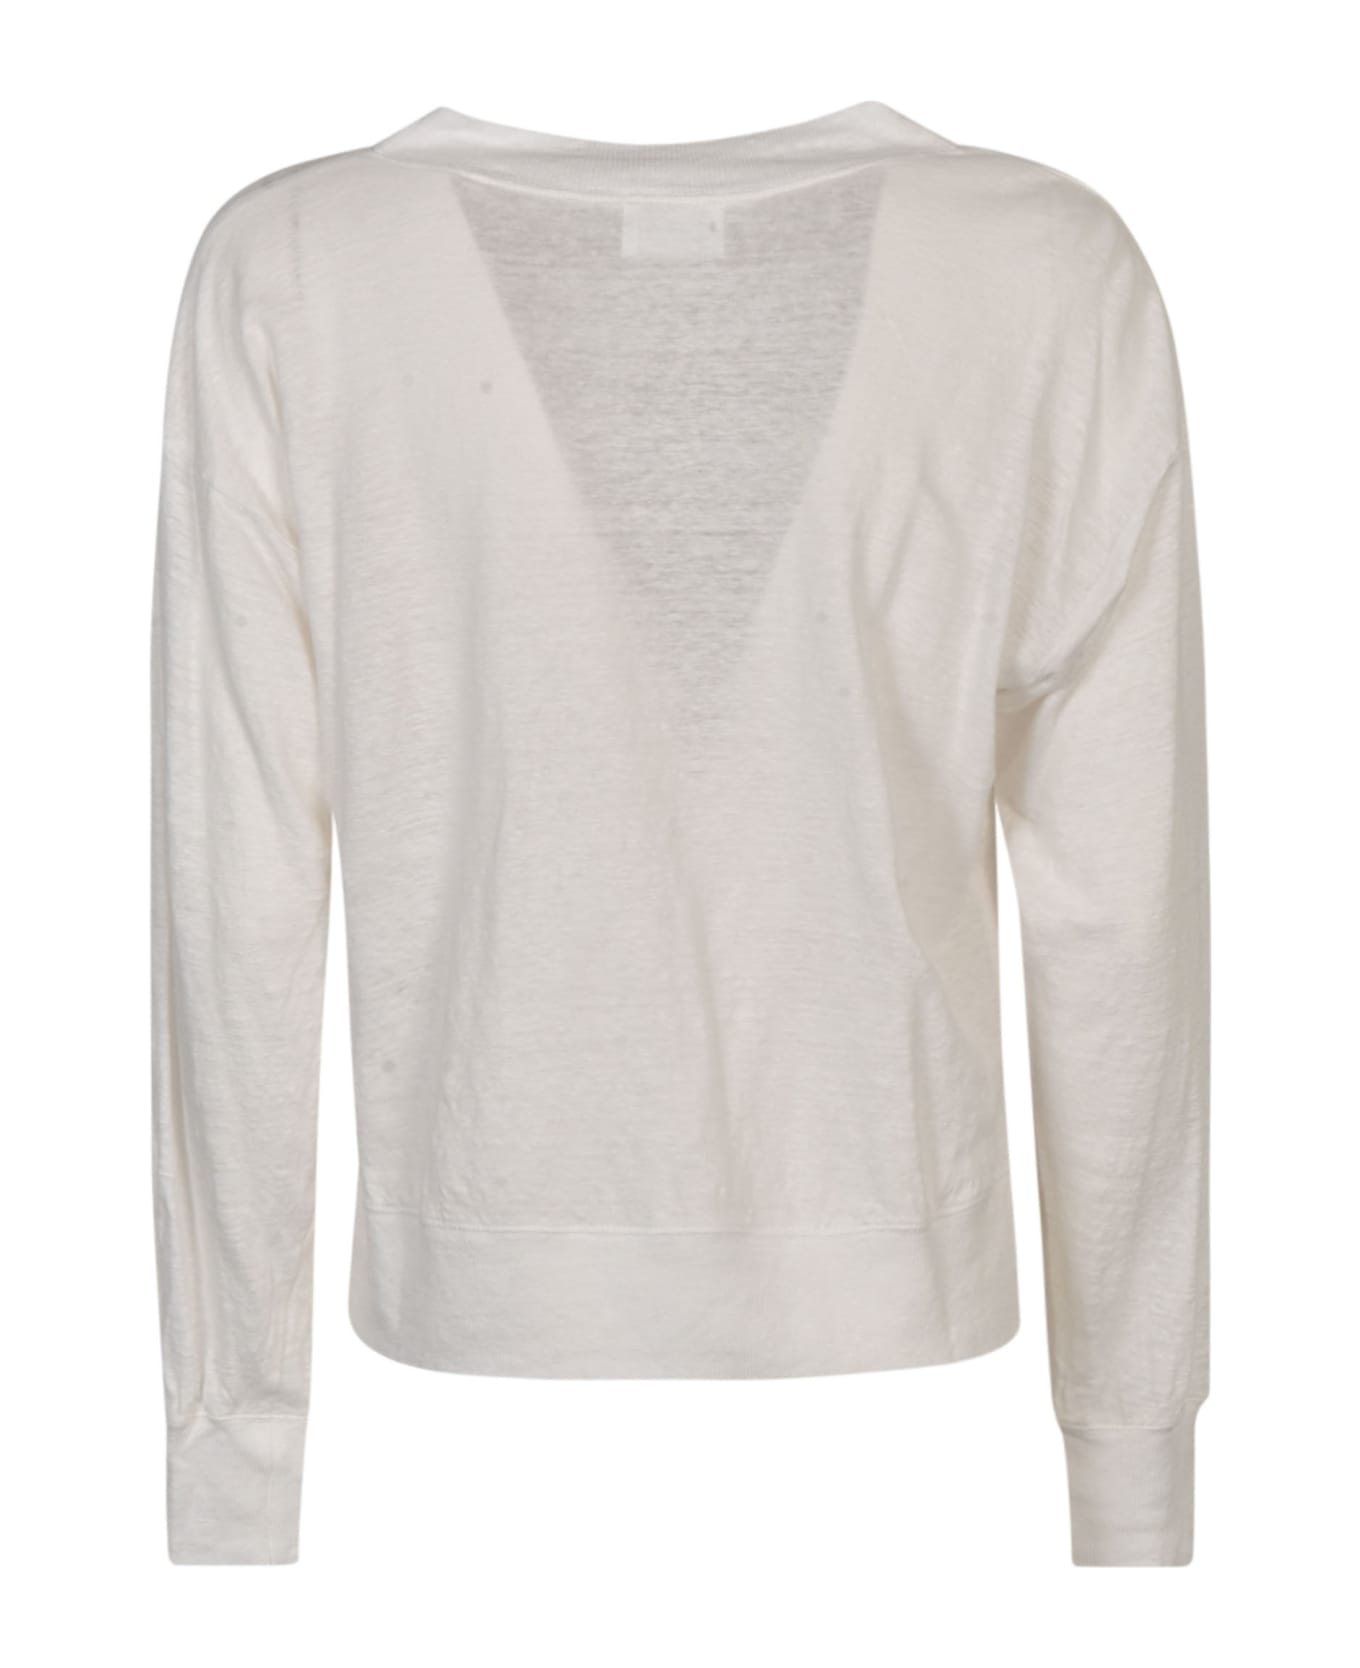 Marant Étoile Kilsen T-shirt - WHITE